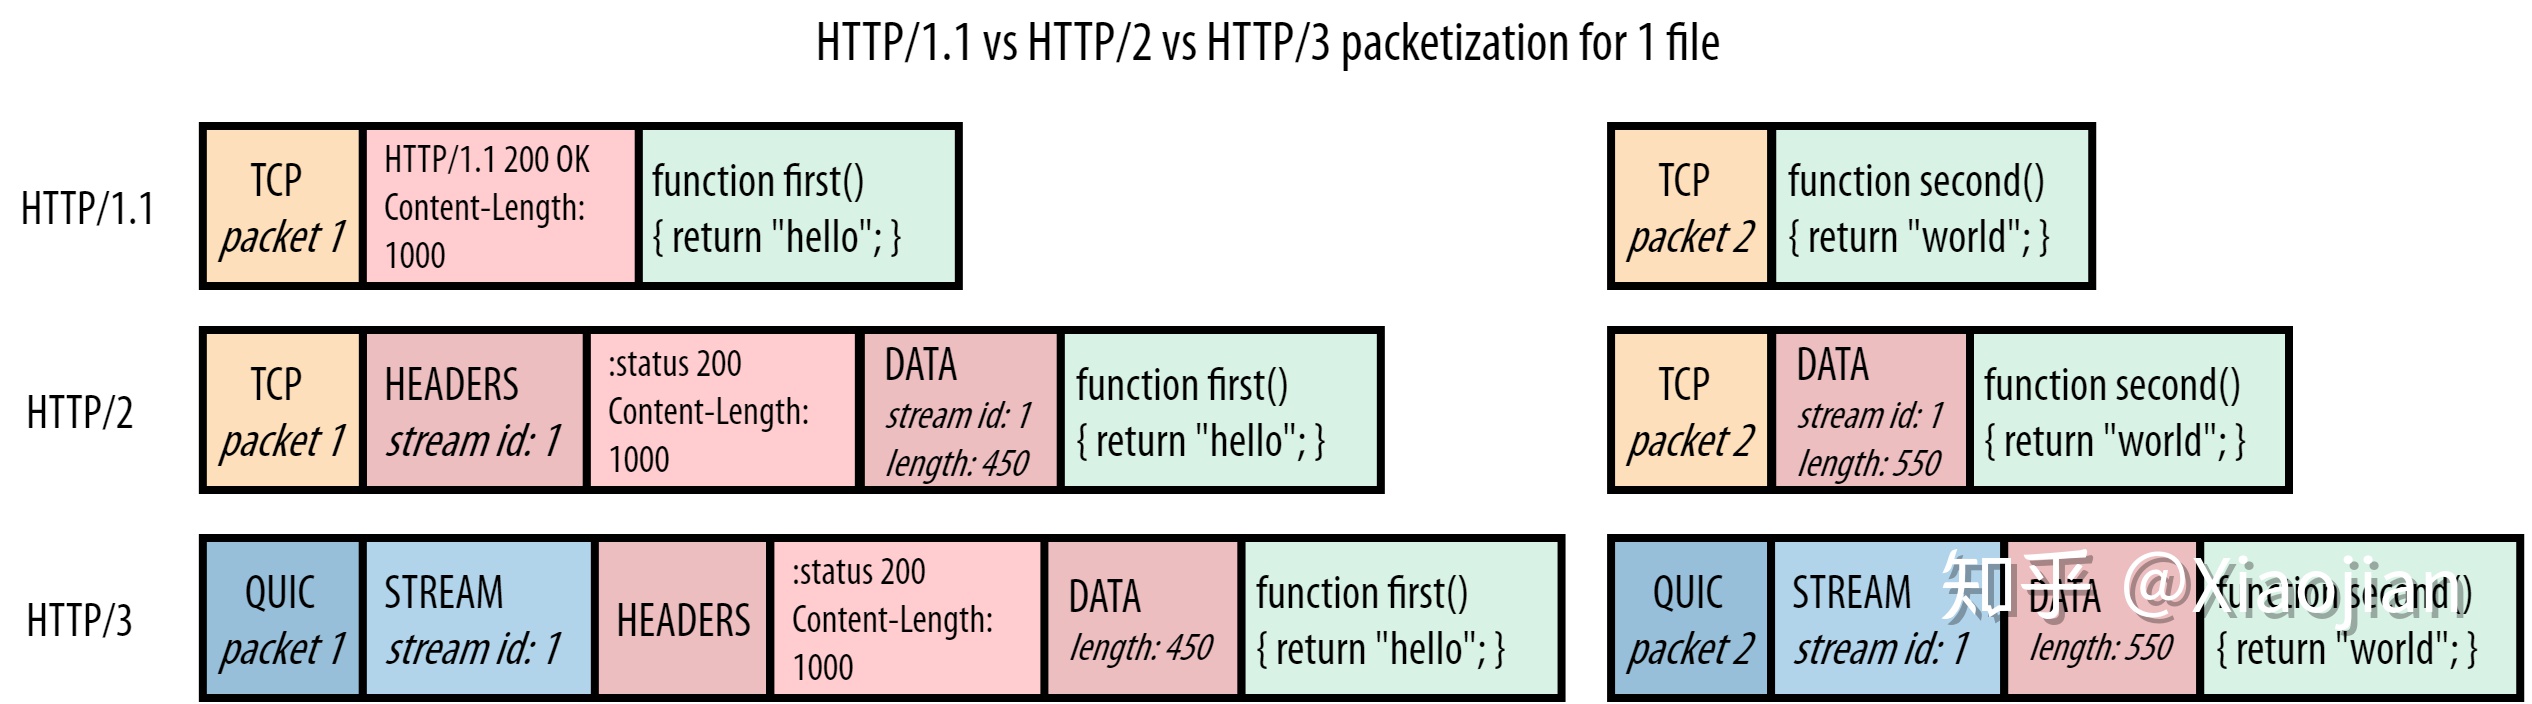 HTTP/2-2